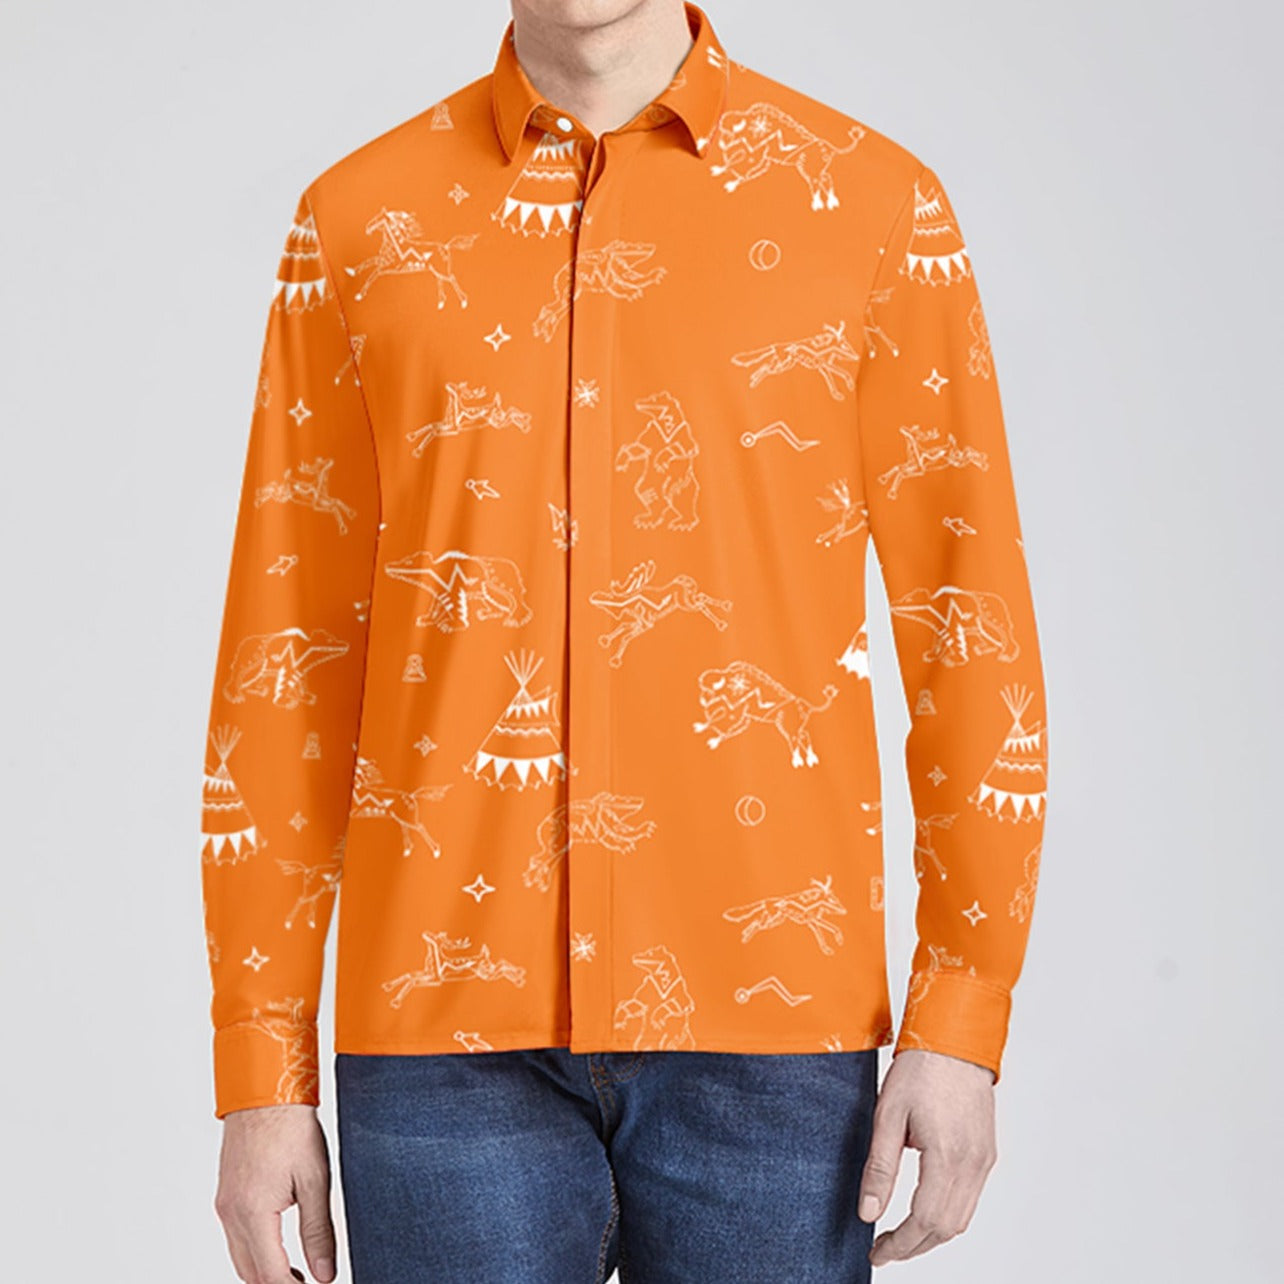 Ledger Dabbles Orange Men's Long Sleeve Dress Shirt